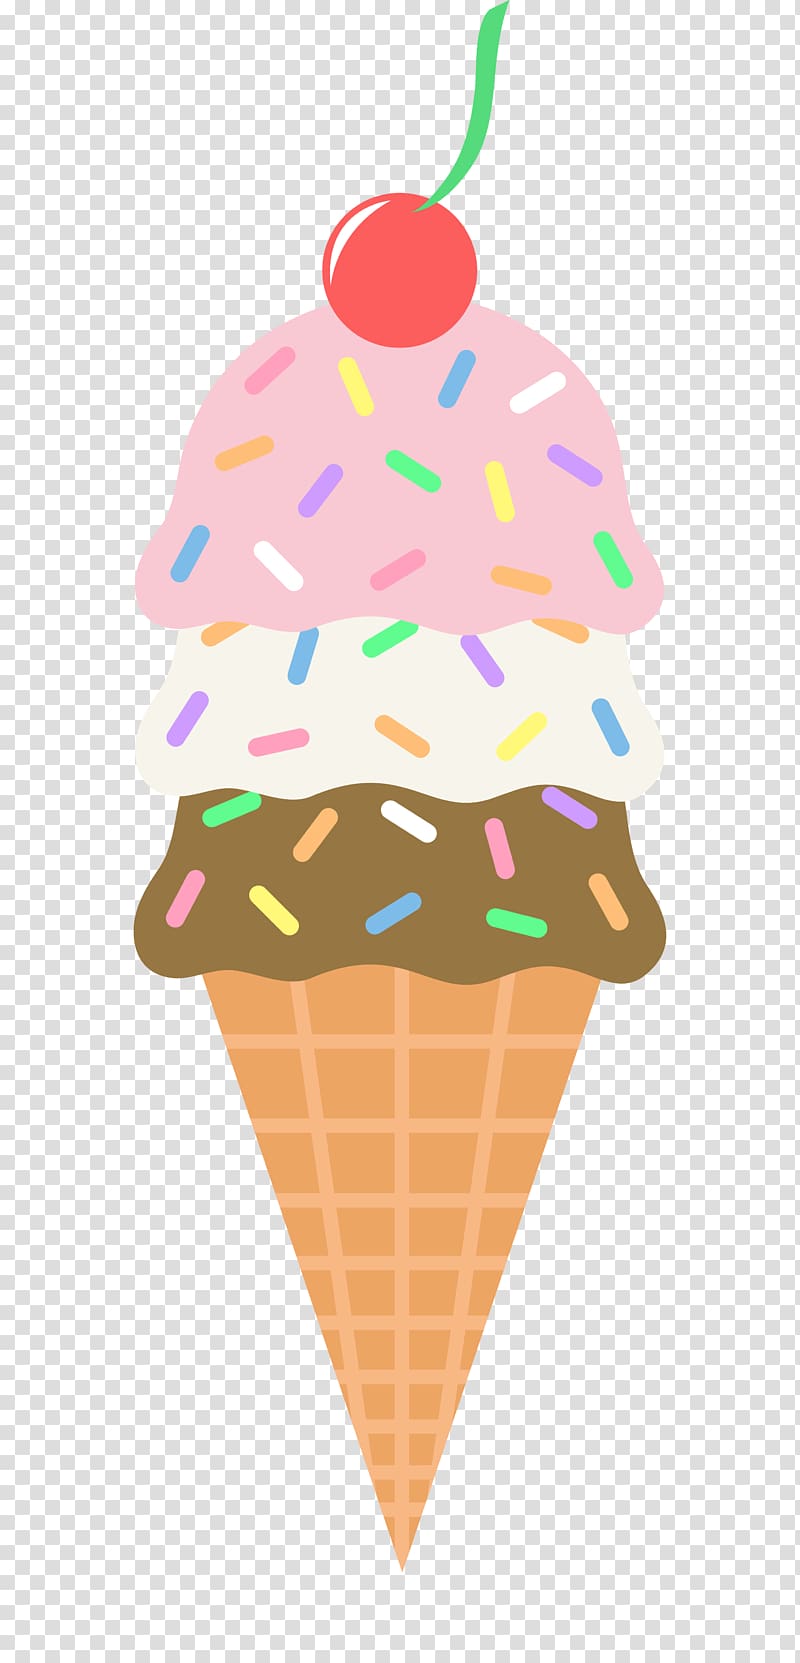 Ice cream cone Sundae Neapolitan ice cream, Icecream transparent background PNG clipart